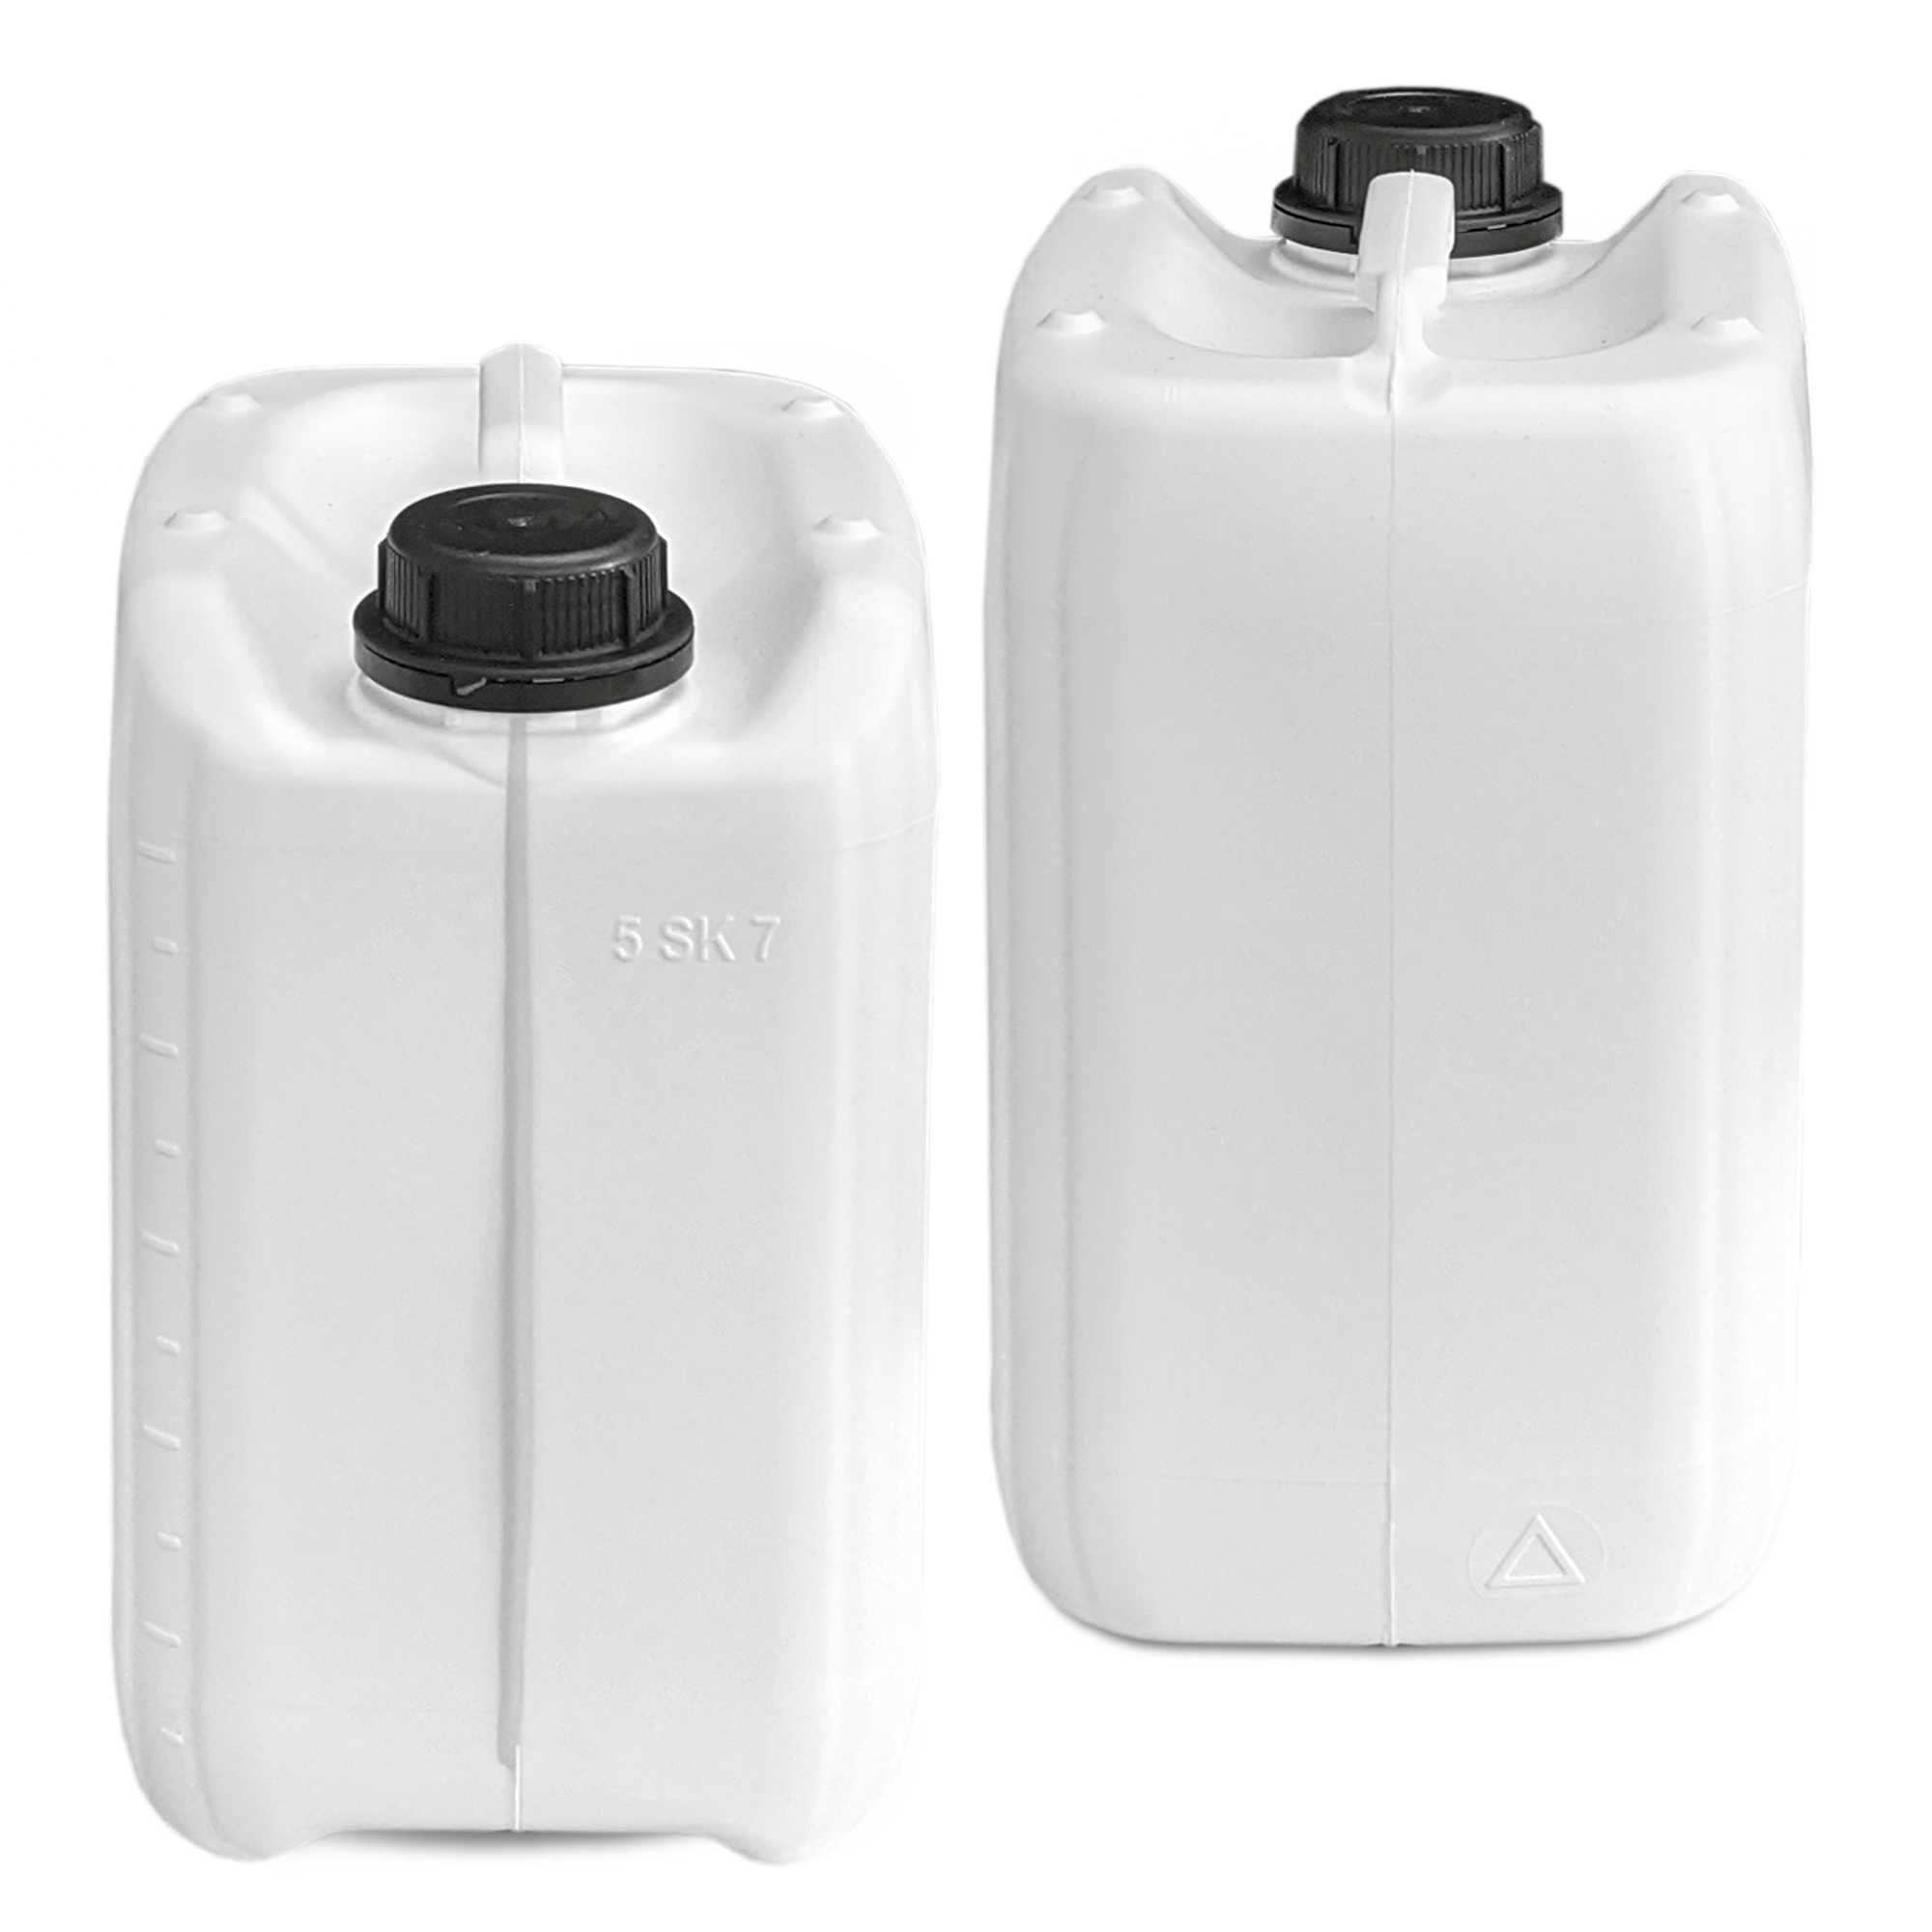 Plasteo Kanister (DIN 5 weiß 45) AFT-Hahn (1 Kanister mit Liter St) plasteo®